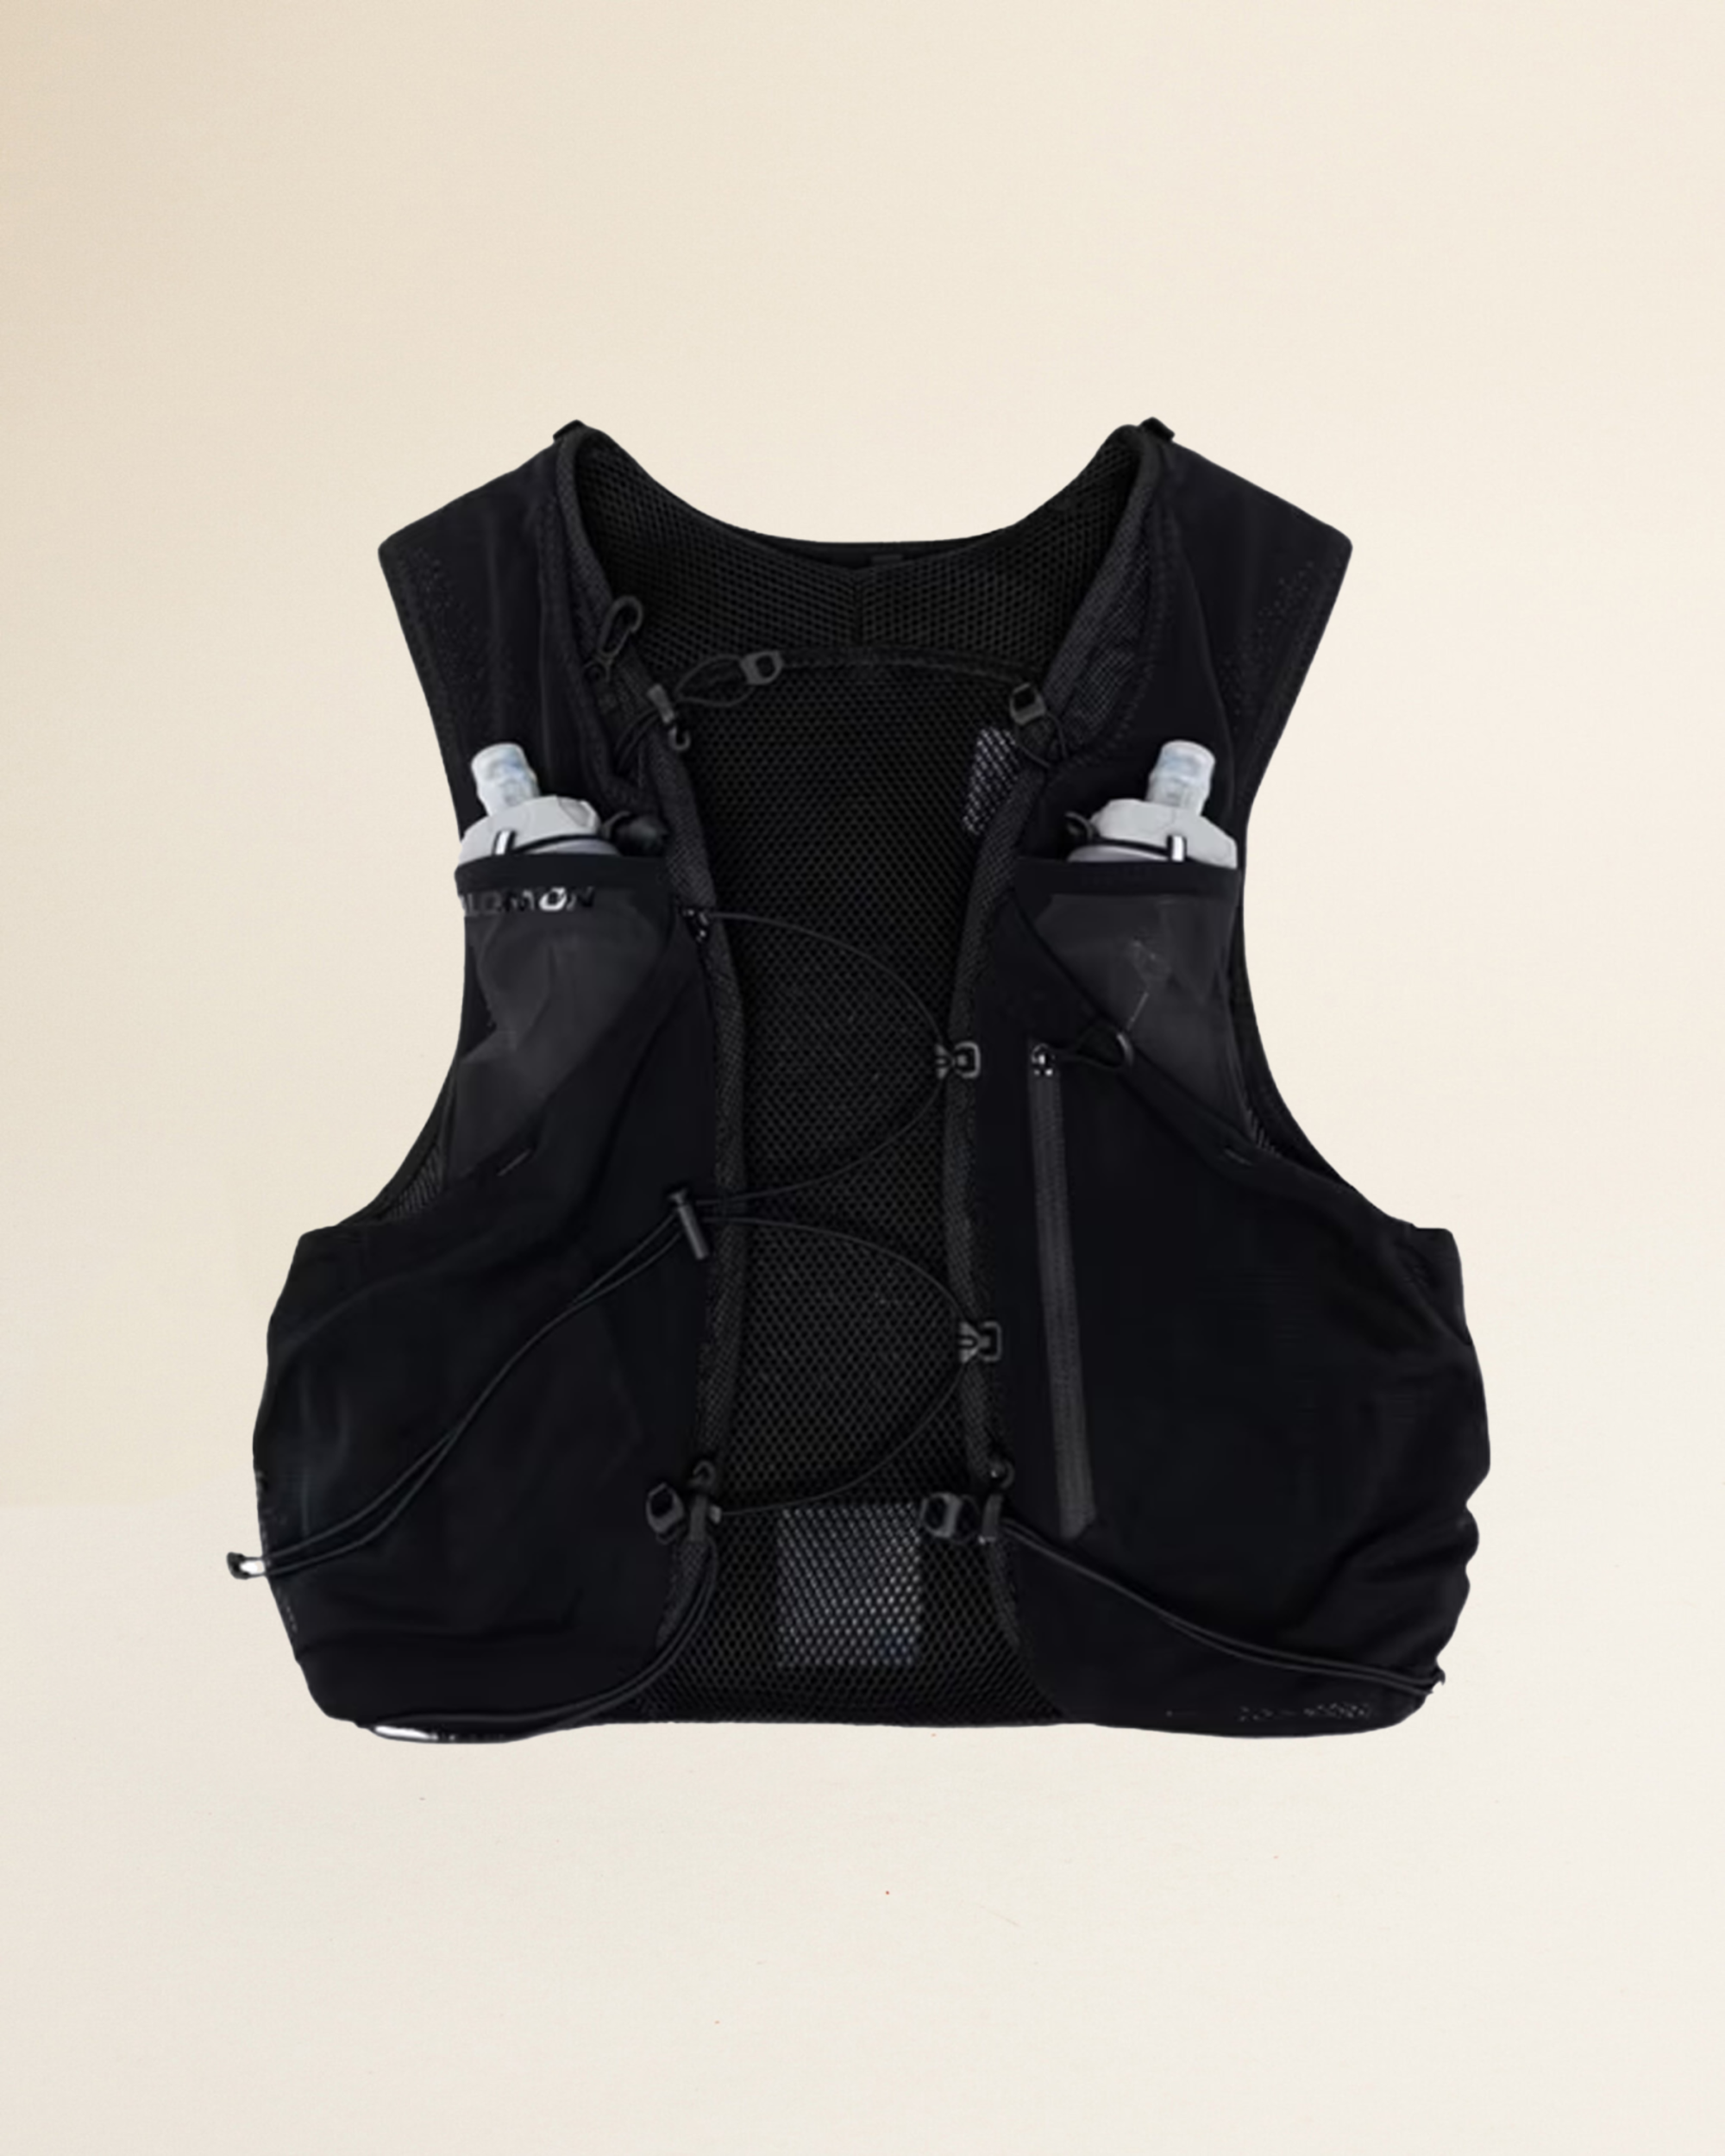 Salomon ADV Skin 5 Backpack - Black